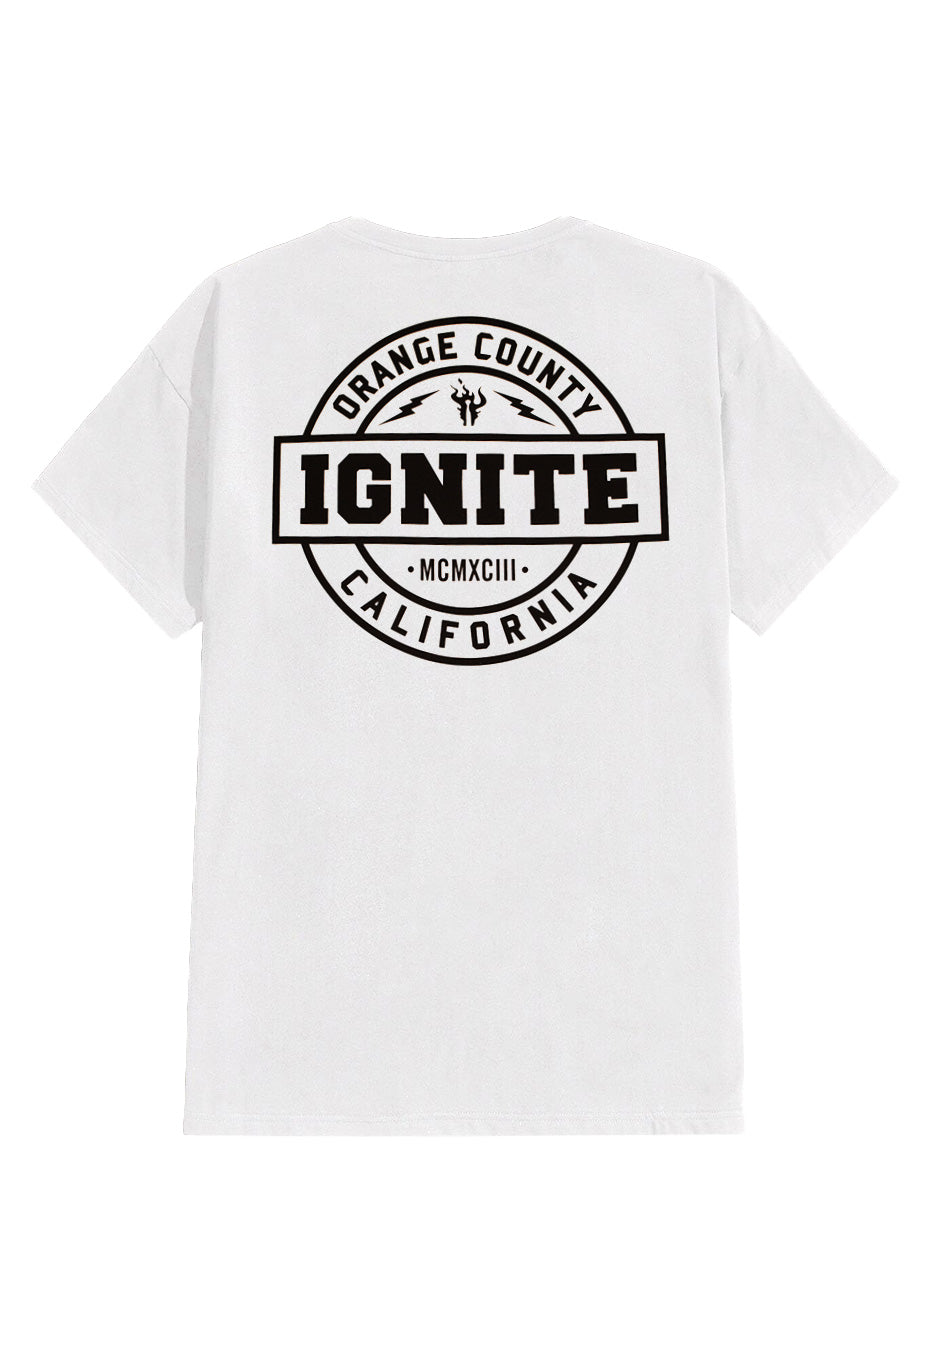 Ignite - New Lightning Flame Pocket White - T-Shirt